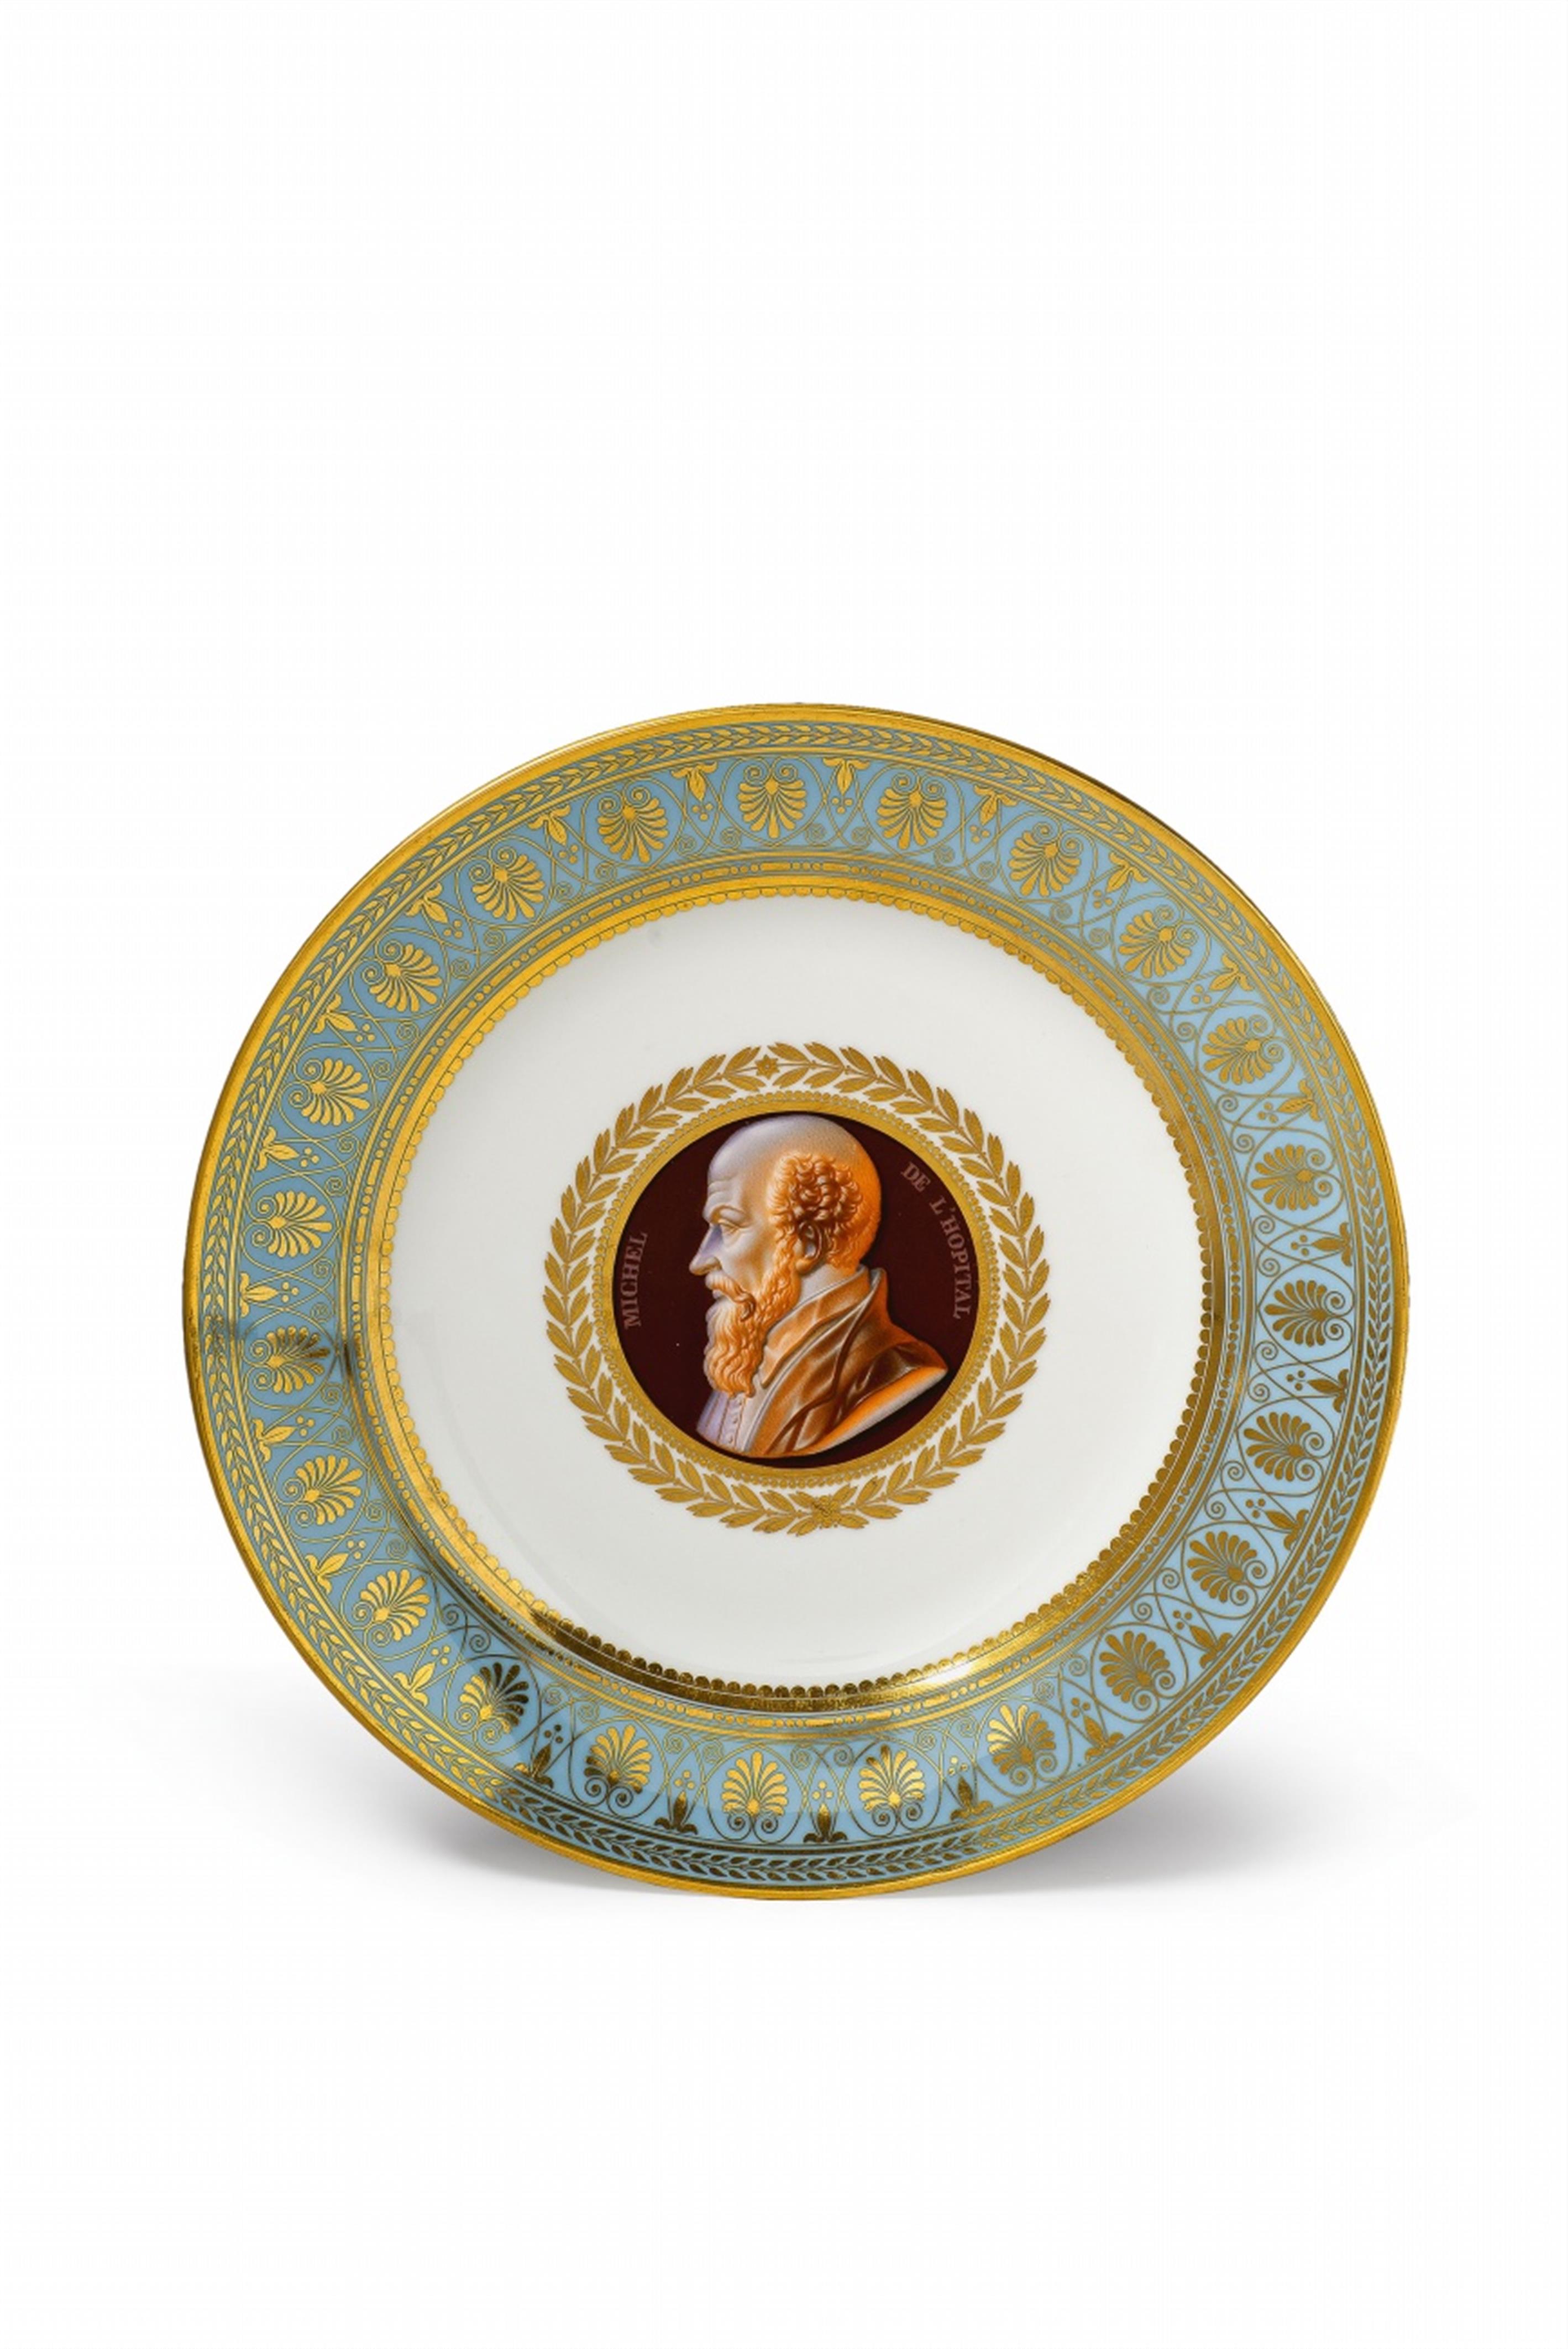 A Sèvres porcelain plate with a cameo portrait of Michel de L'Hopital - image-1